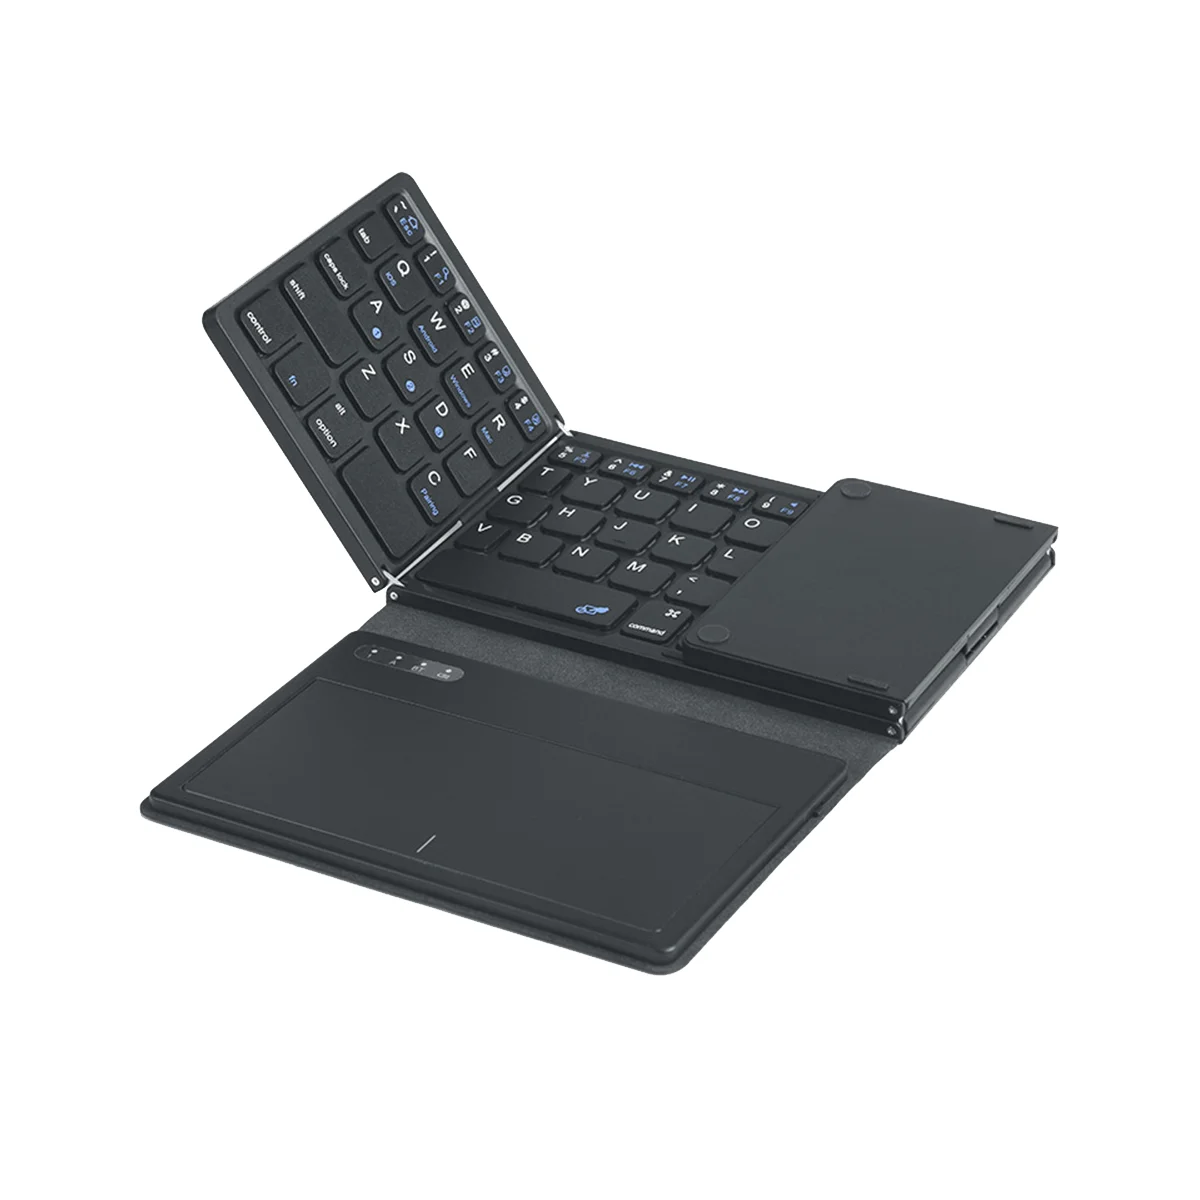 Складная беспроводная клавиатура Bluetooth с тачпадом Ультратонкая карманная складная клавиатура для ПК с IOS, Android, Windows Tablet 0